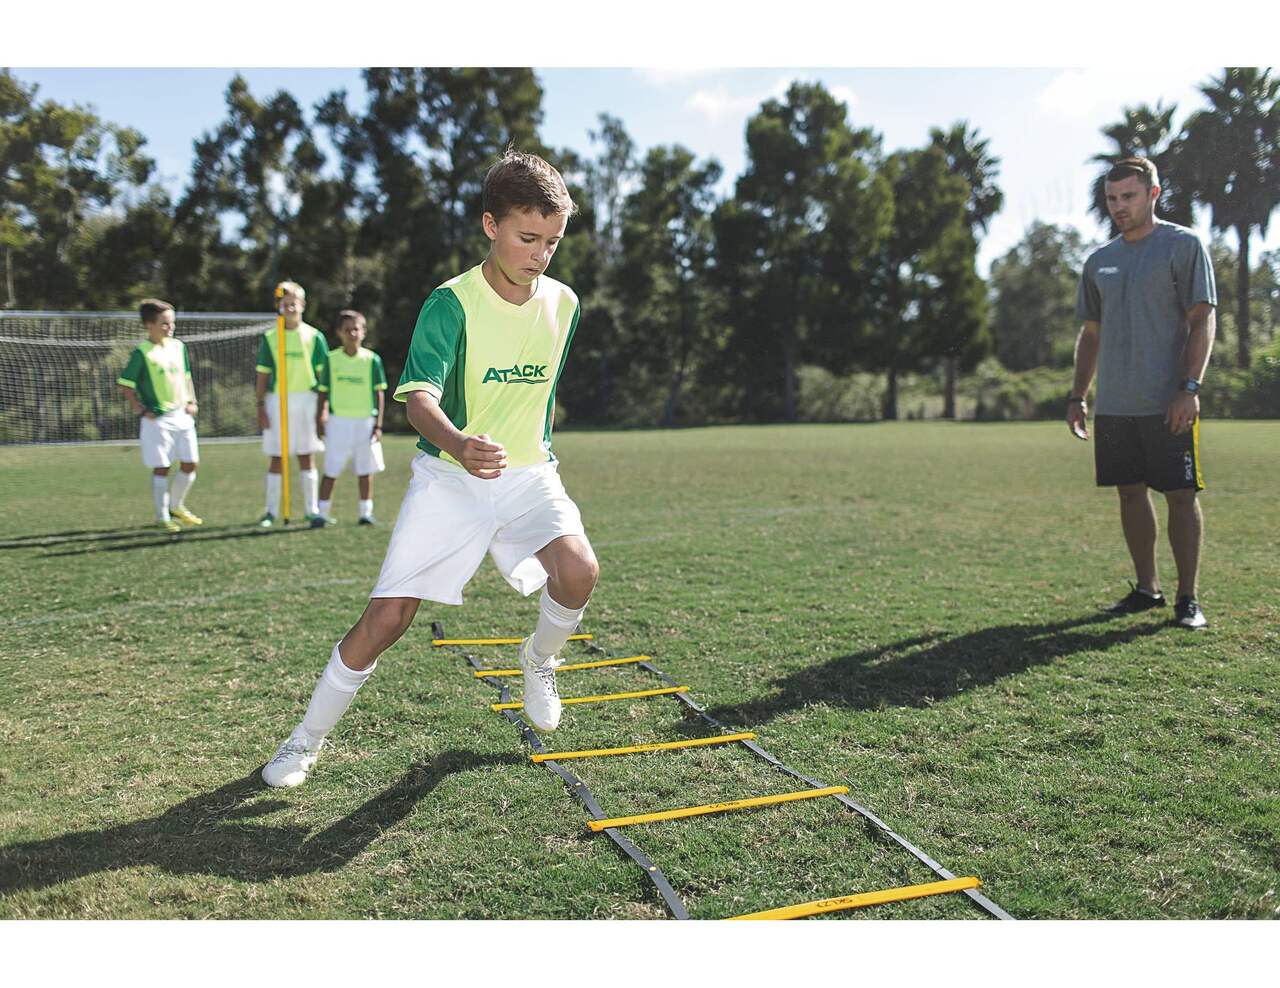 Sklz Quick Ladder échelle d'agilité et d'entrainement sport - Soccer Sport  Fitness